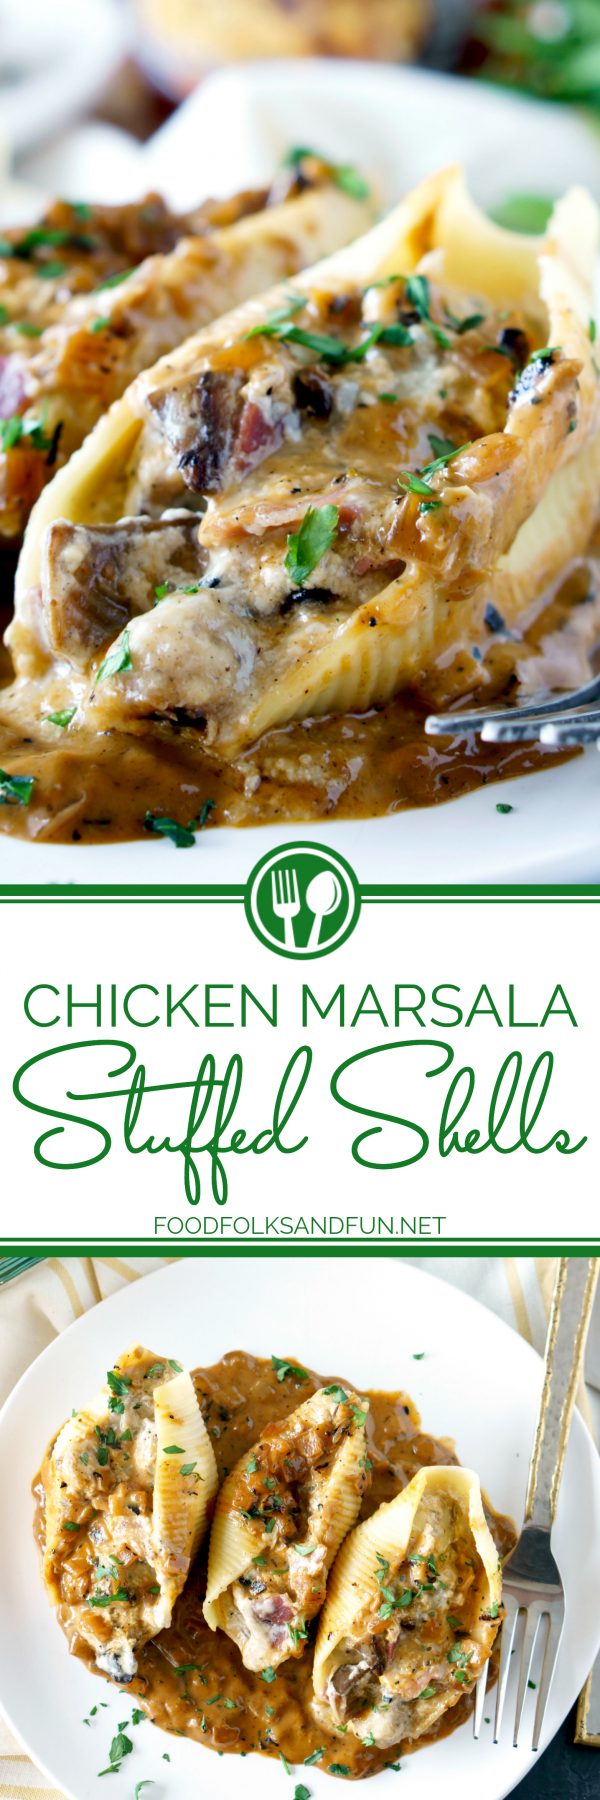 Delicious Chicken Marsala Stuffed Shells recipe.